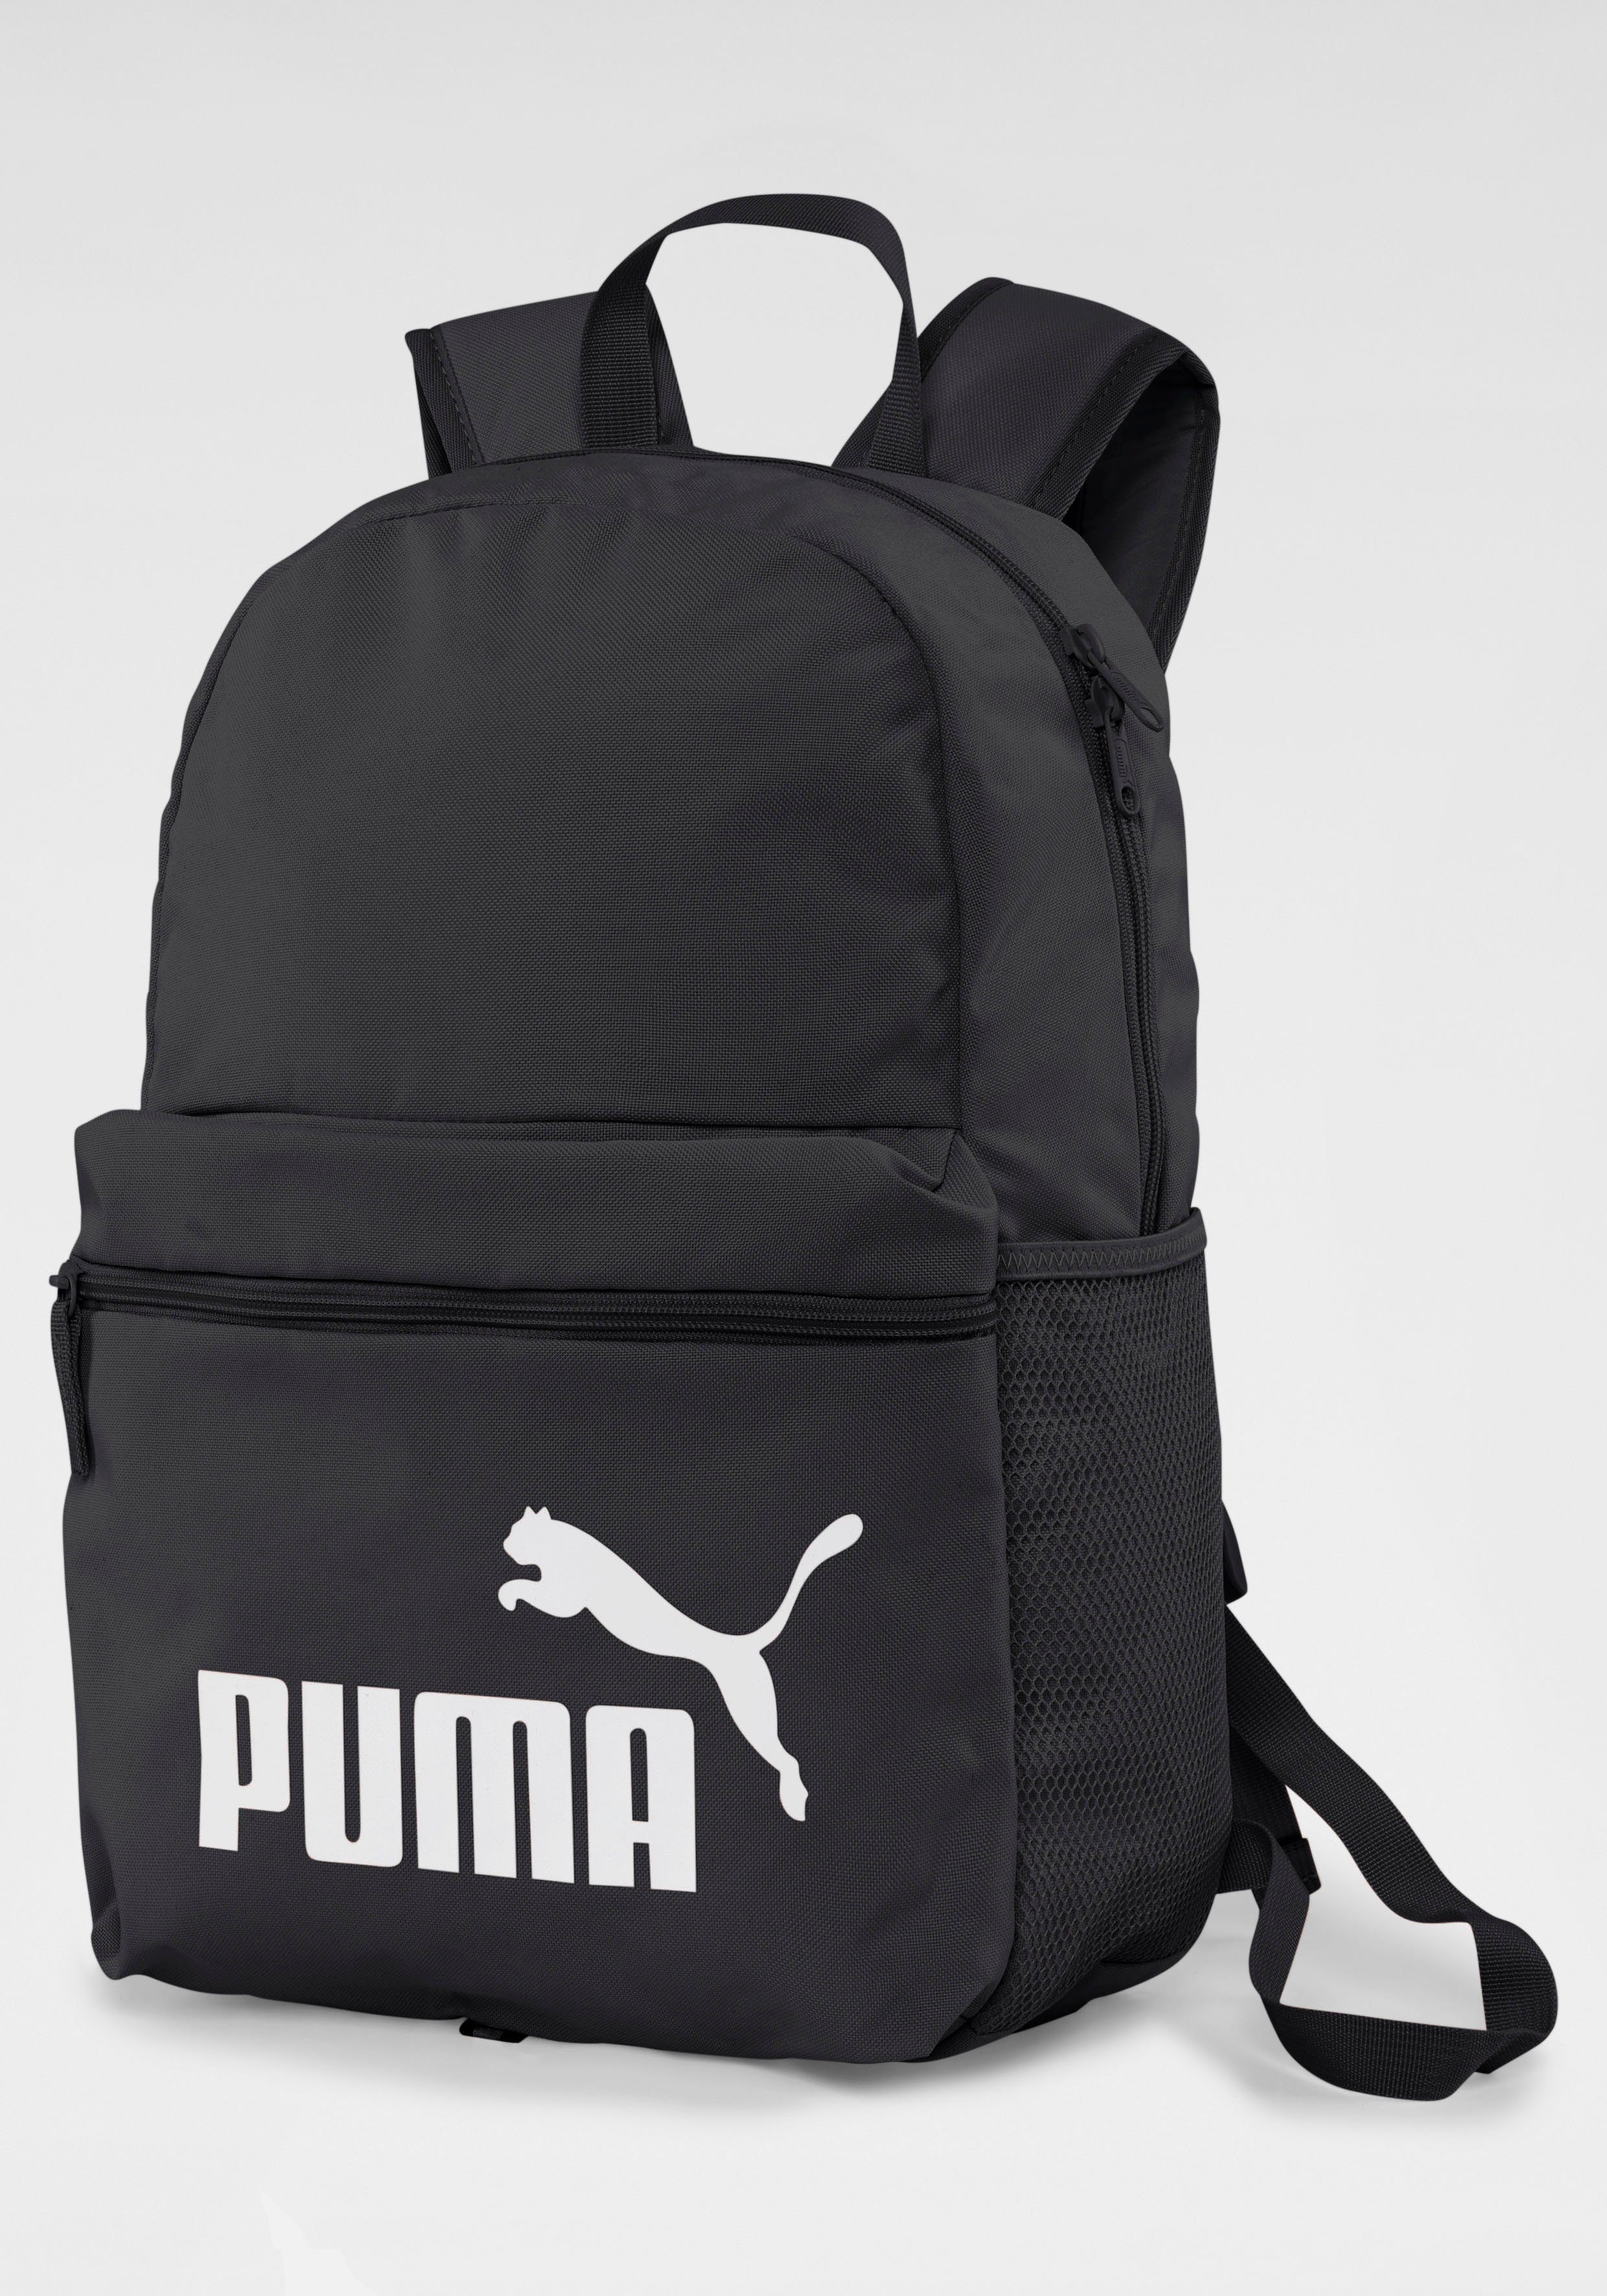 PUMA Sportrucksack PUMA PHASE BACKPACK online kaufen | OTTO